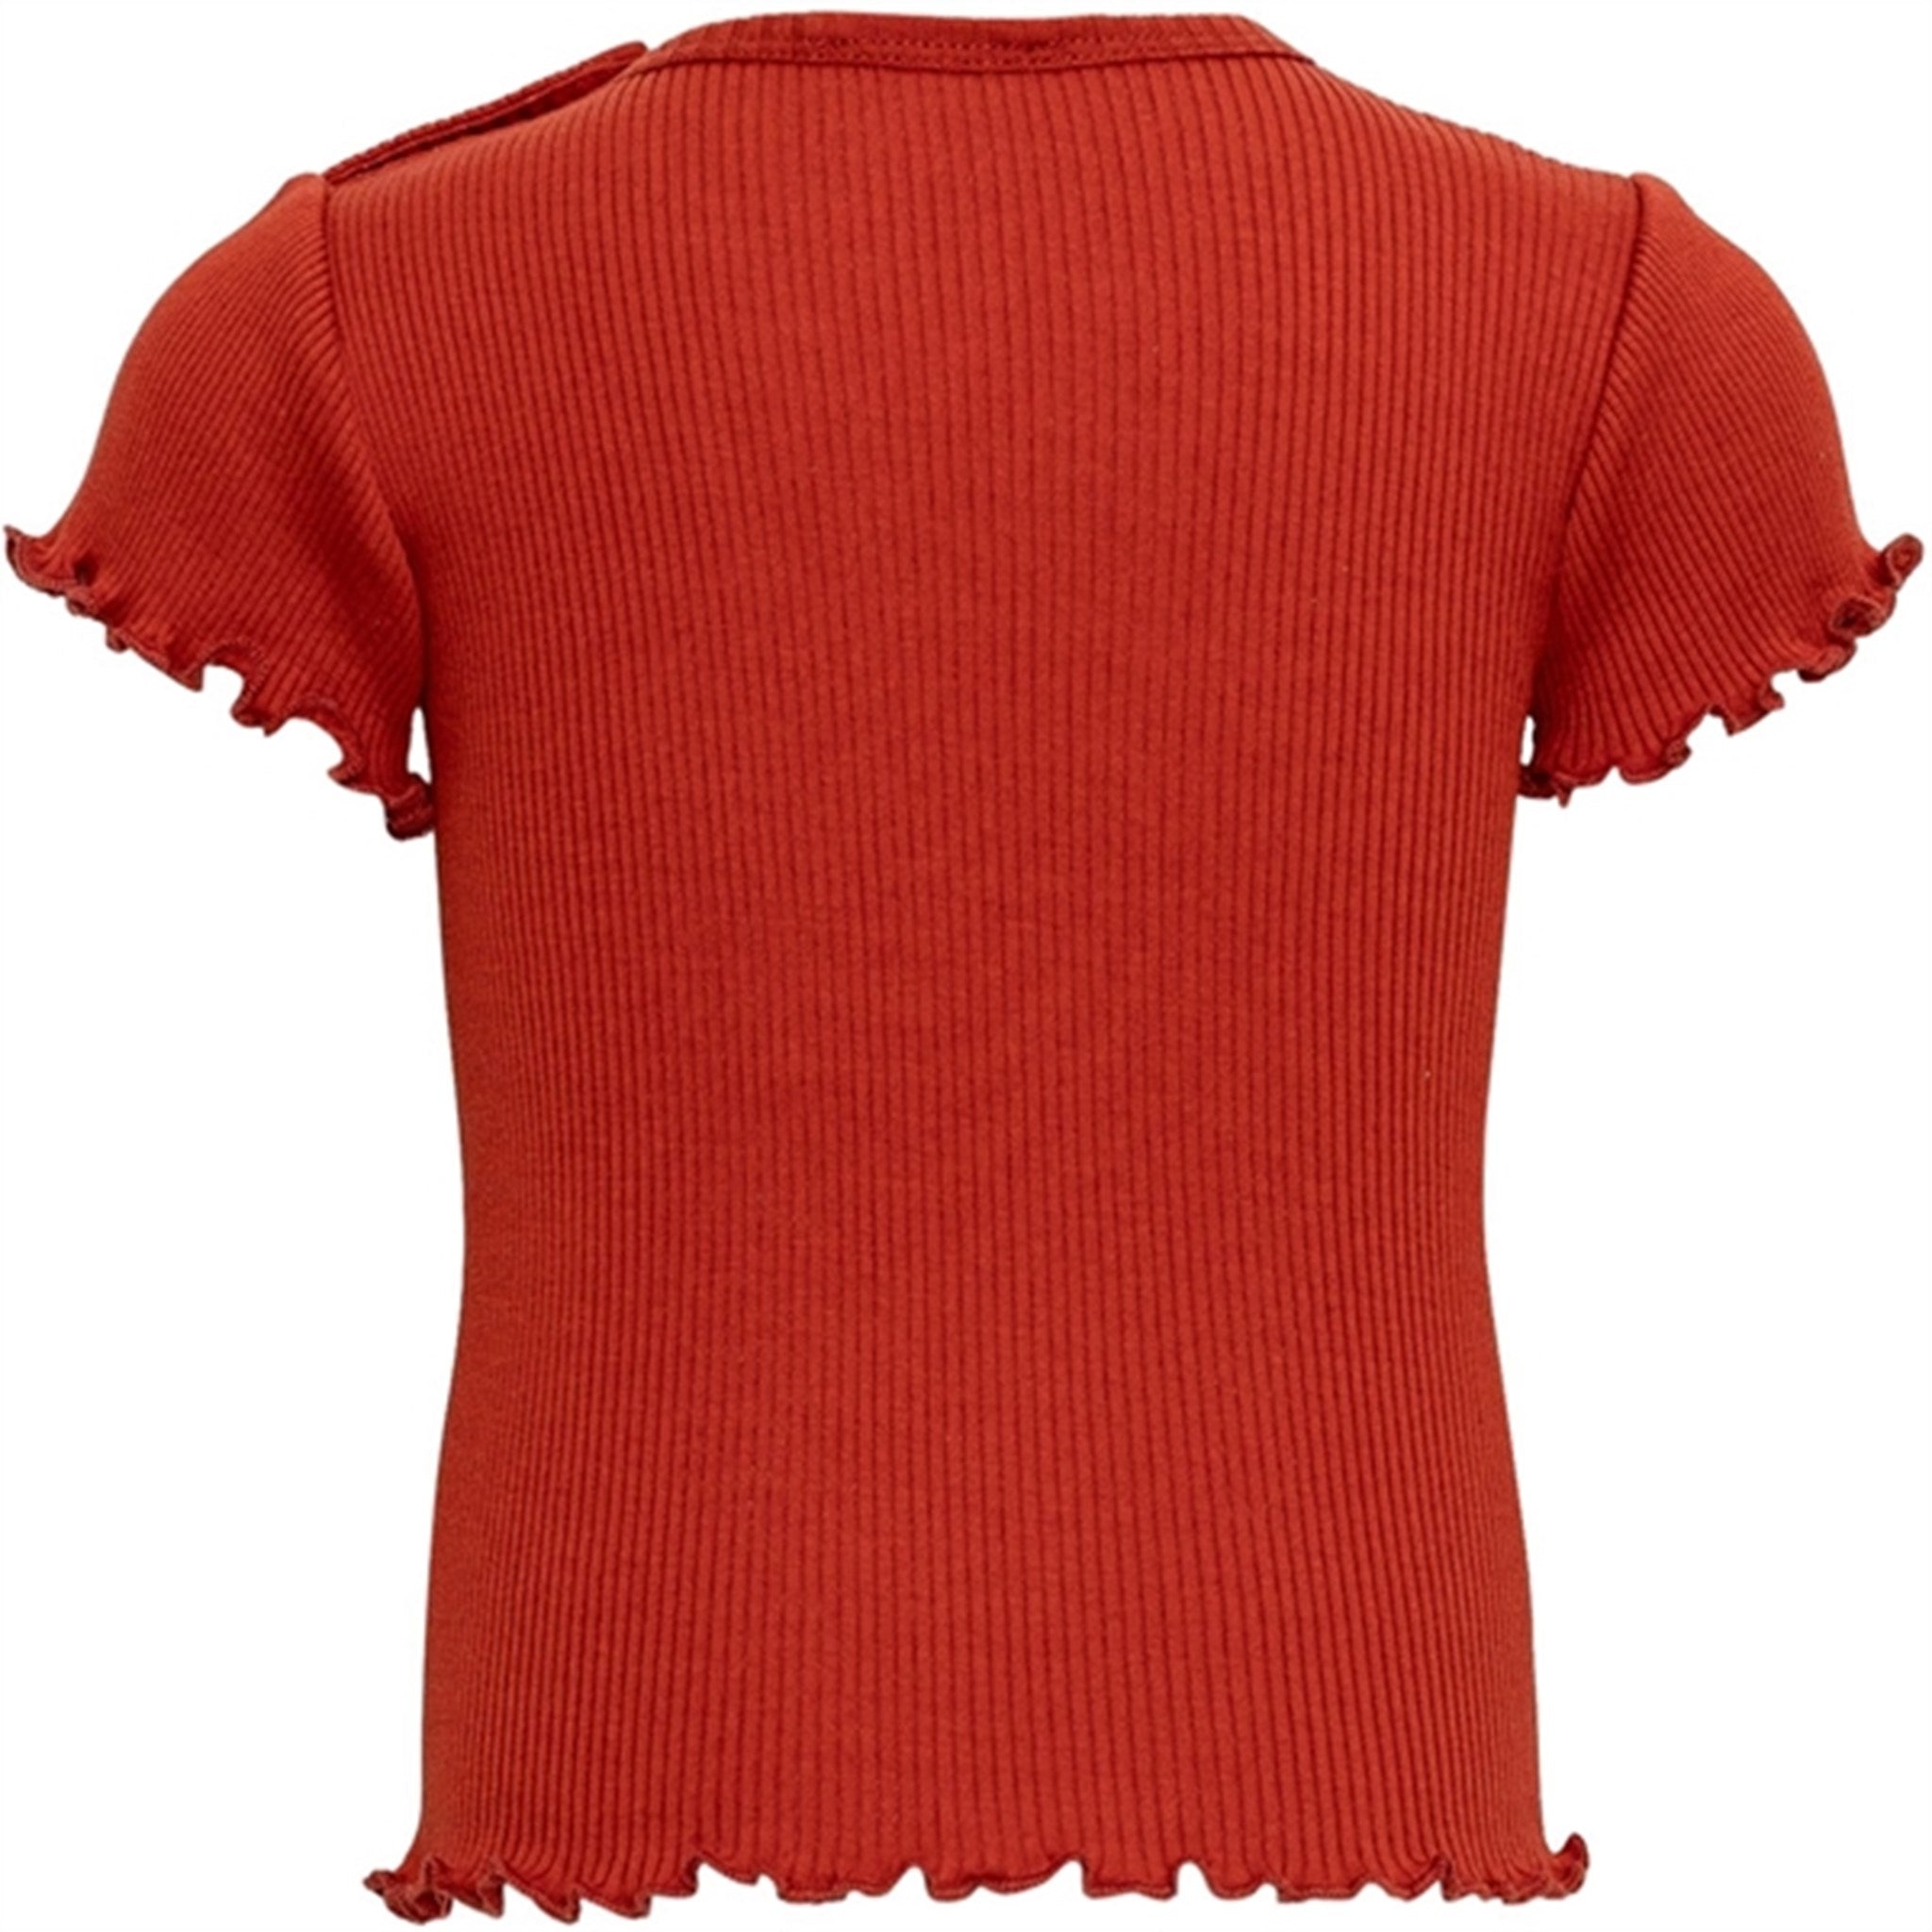 Minimalisma Bimse T-shirt Poppy Red 3